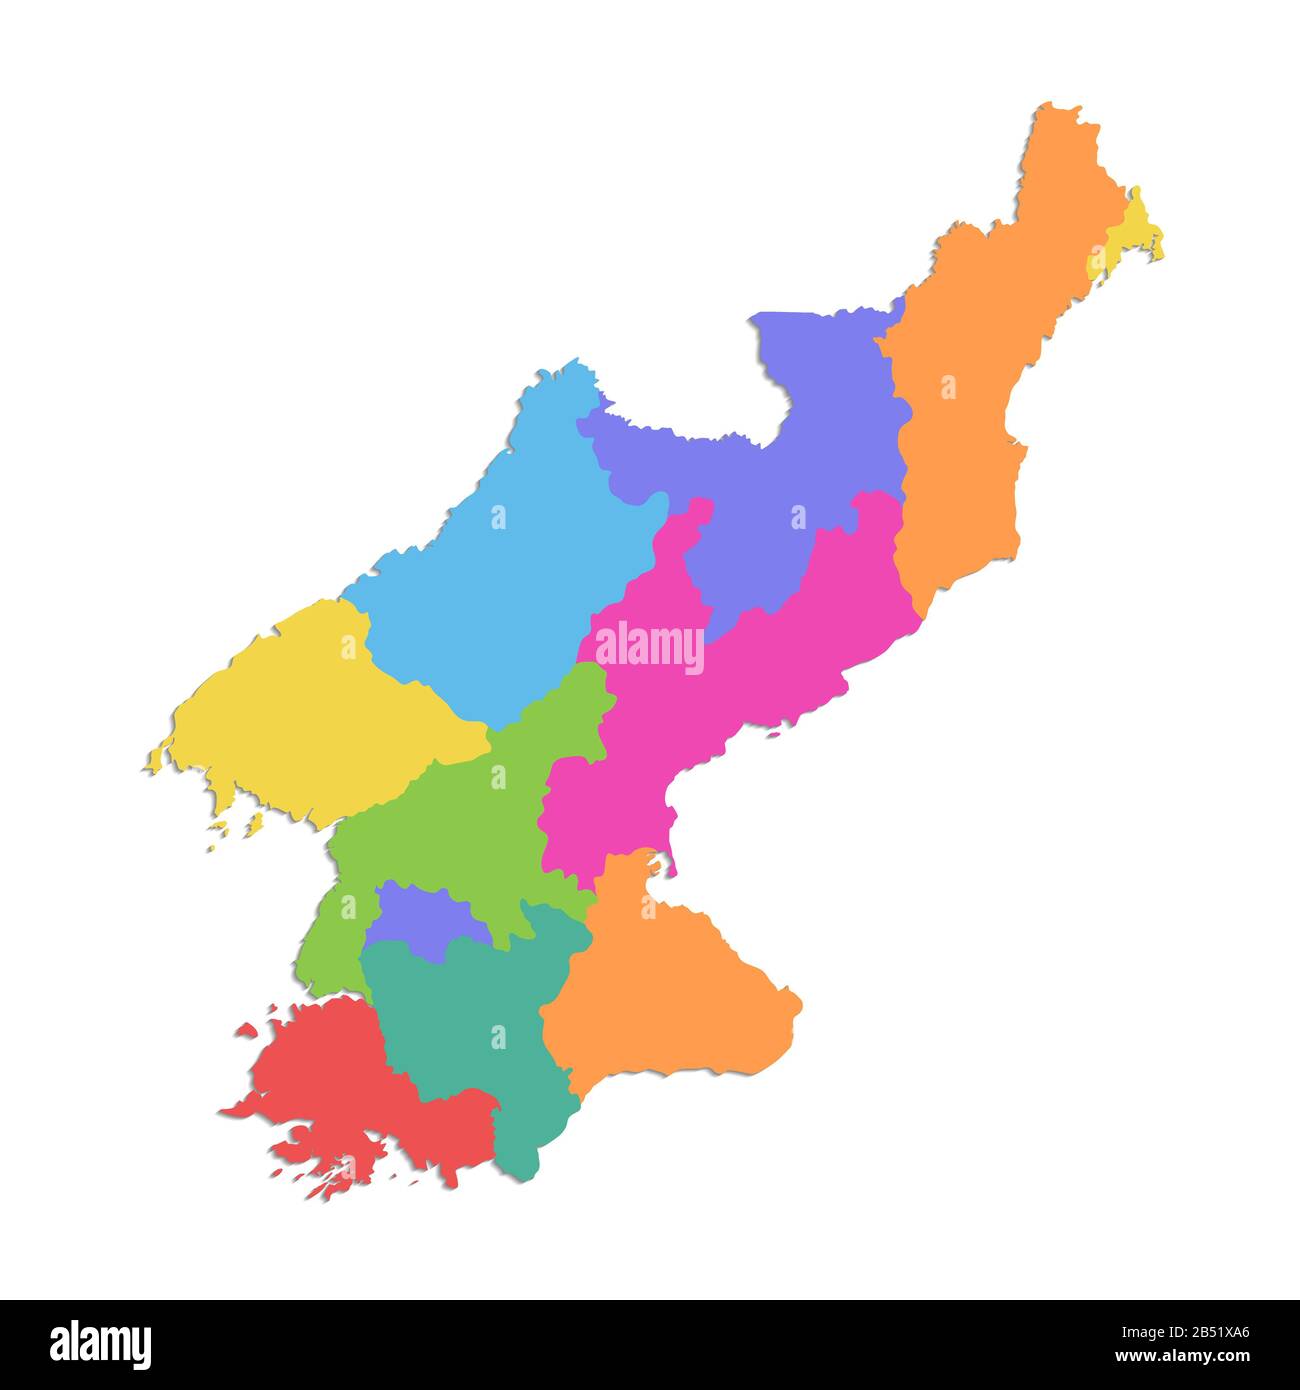 Mappa della Corea del Nord, Repubblica popolare Democratica di Corea, divisione amministrativa, mappa dei colori isolata su bianco sfondo vuoto Foto Stock